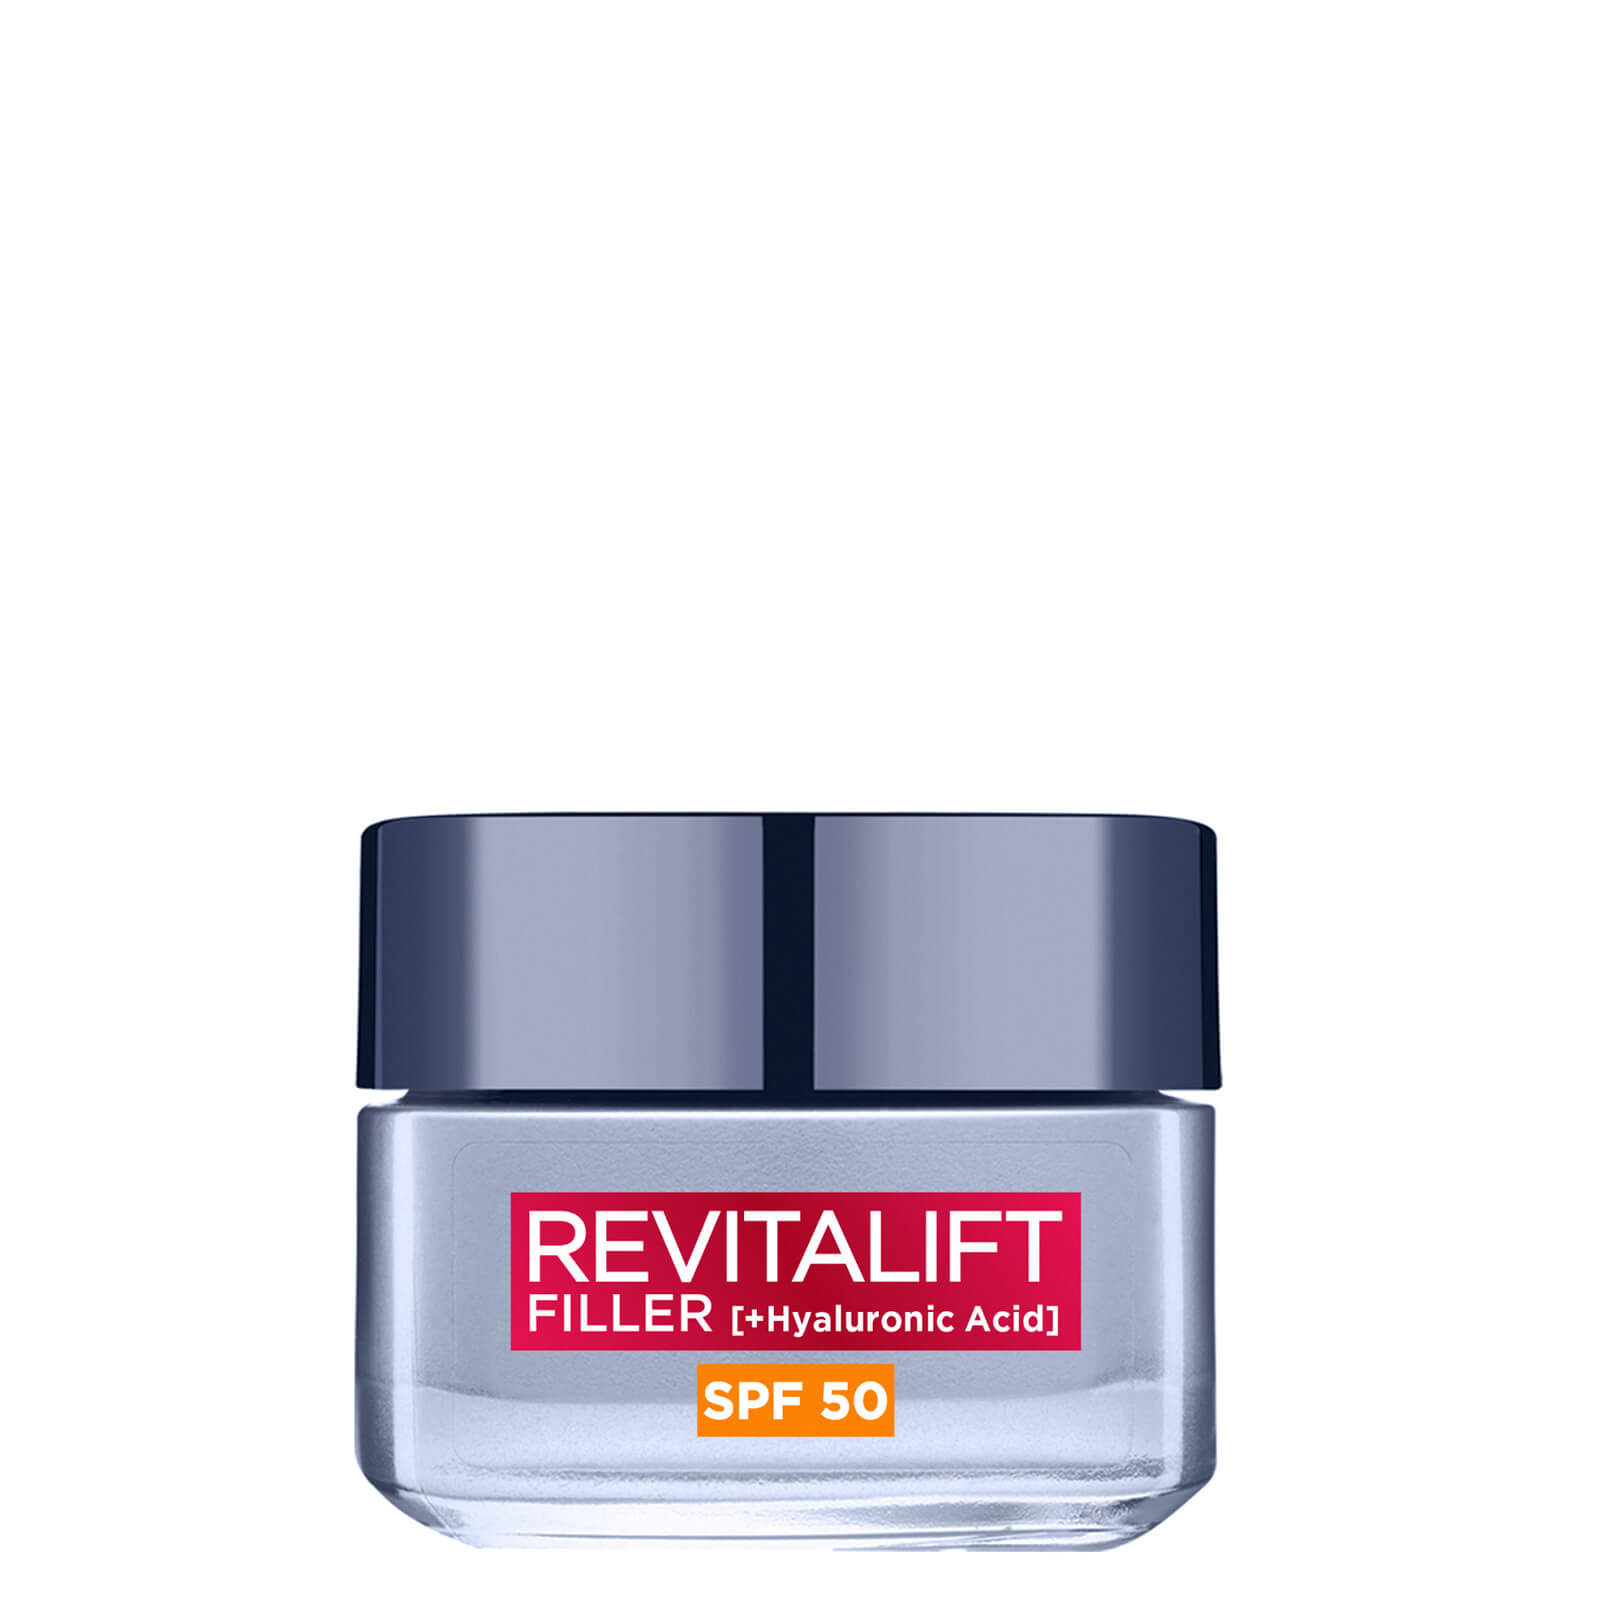 L'Oreal Paris Revitalift Filler Hyaluronic Acid Anti-Ageing SPF50 Day Cream 50ml